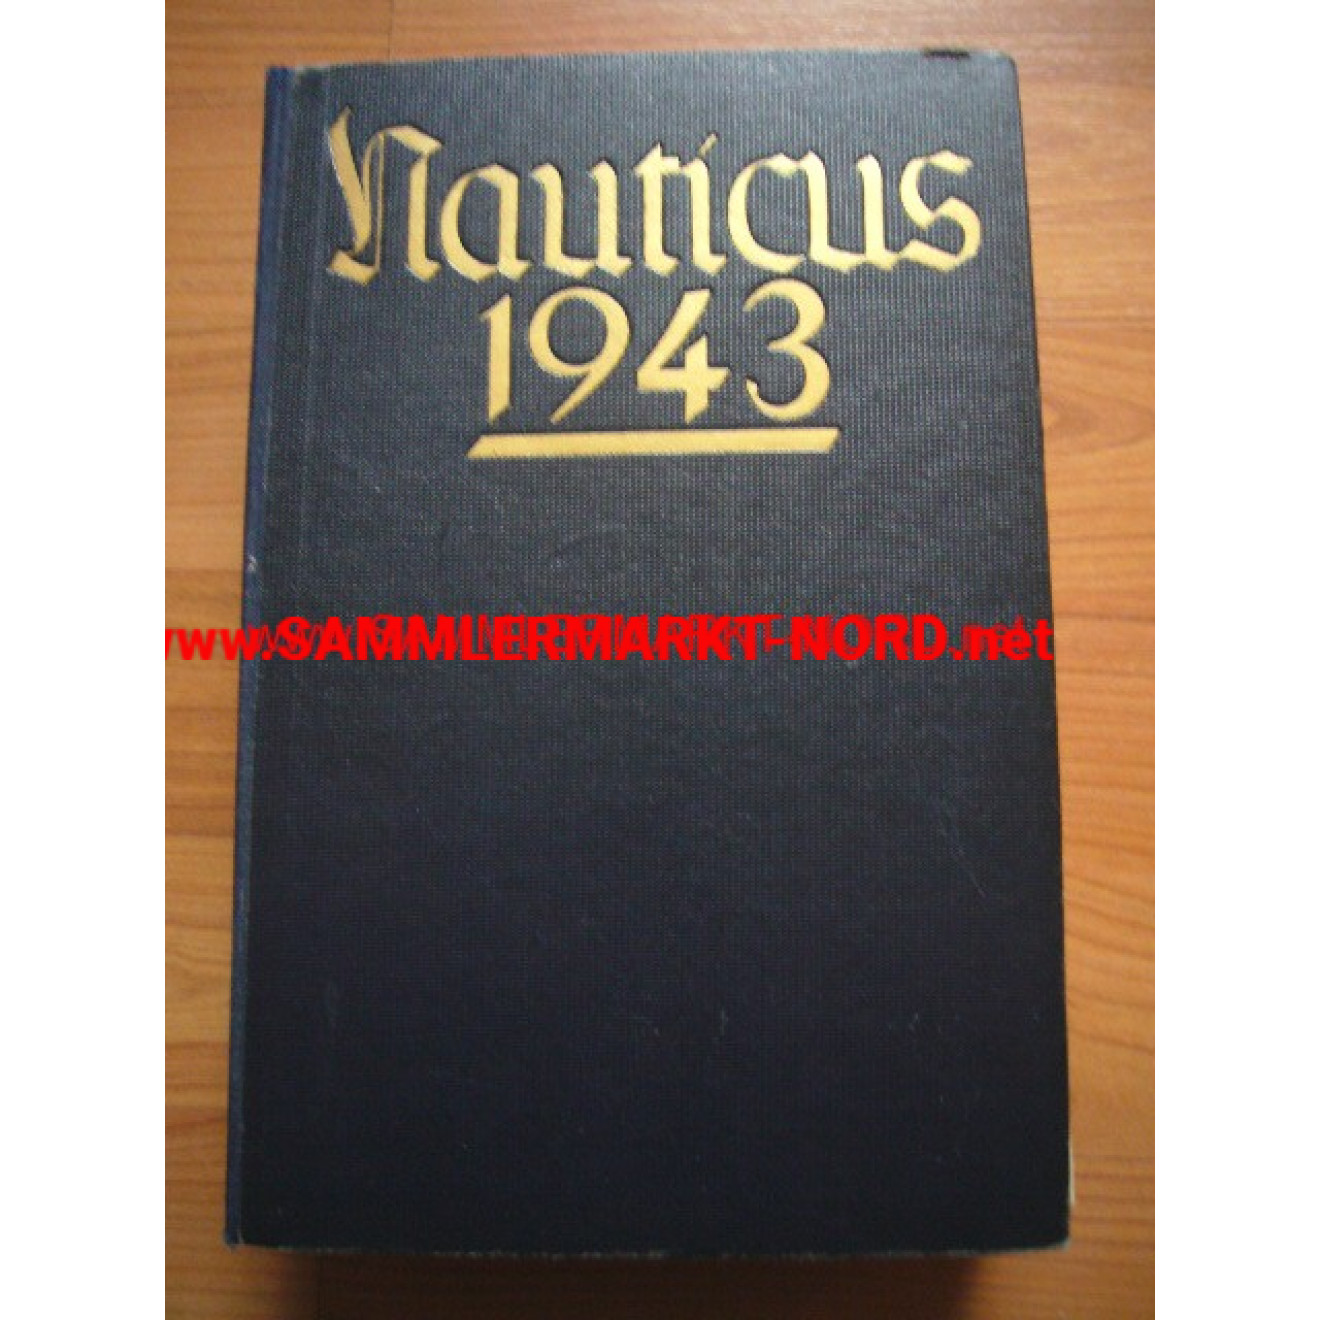 Nauticus 1943